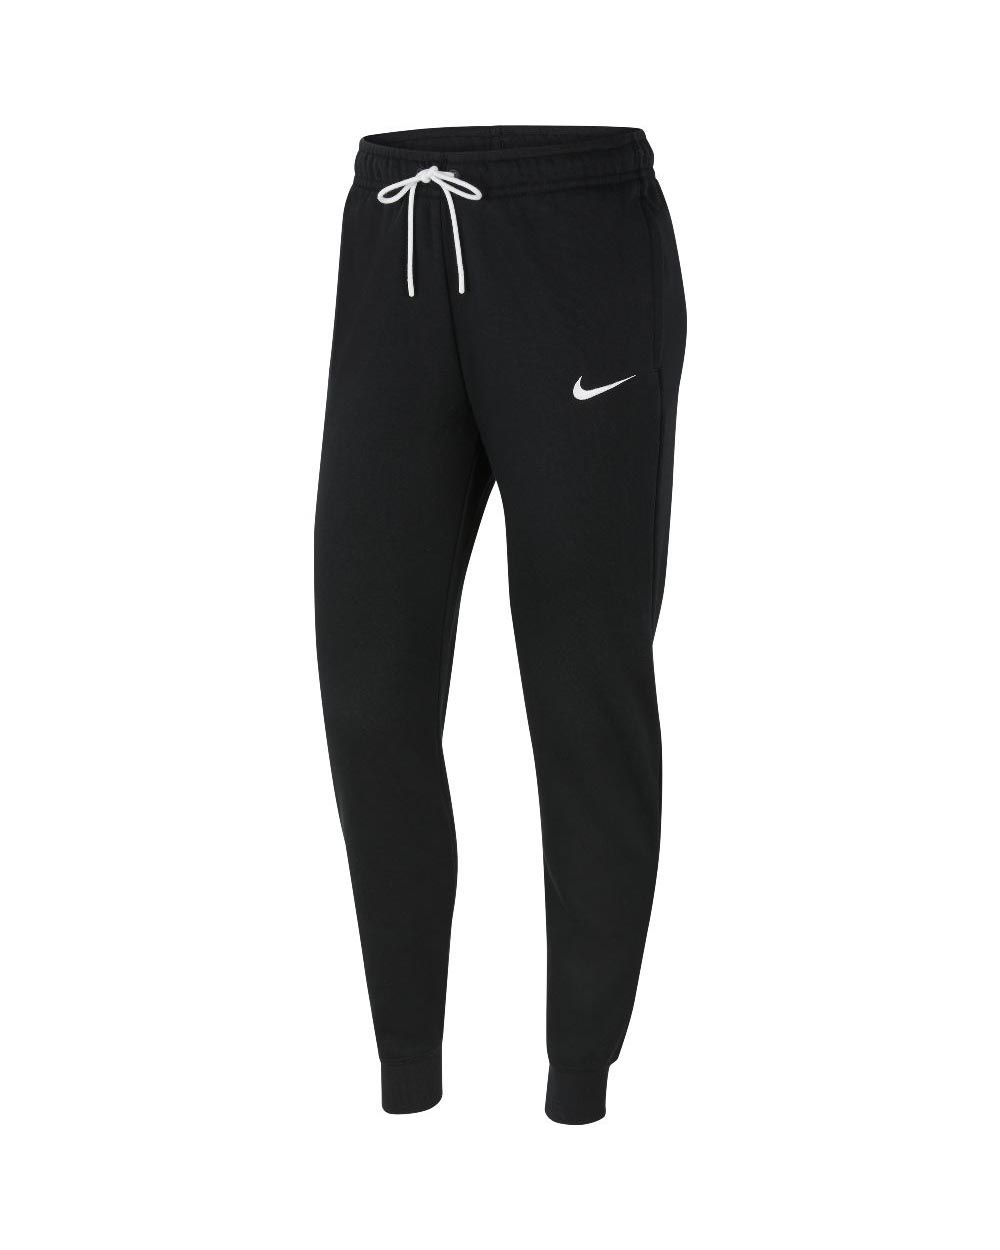 Jogging sportswear club noir femme - Nike